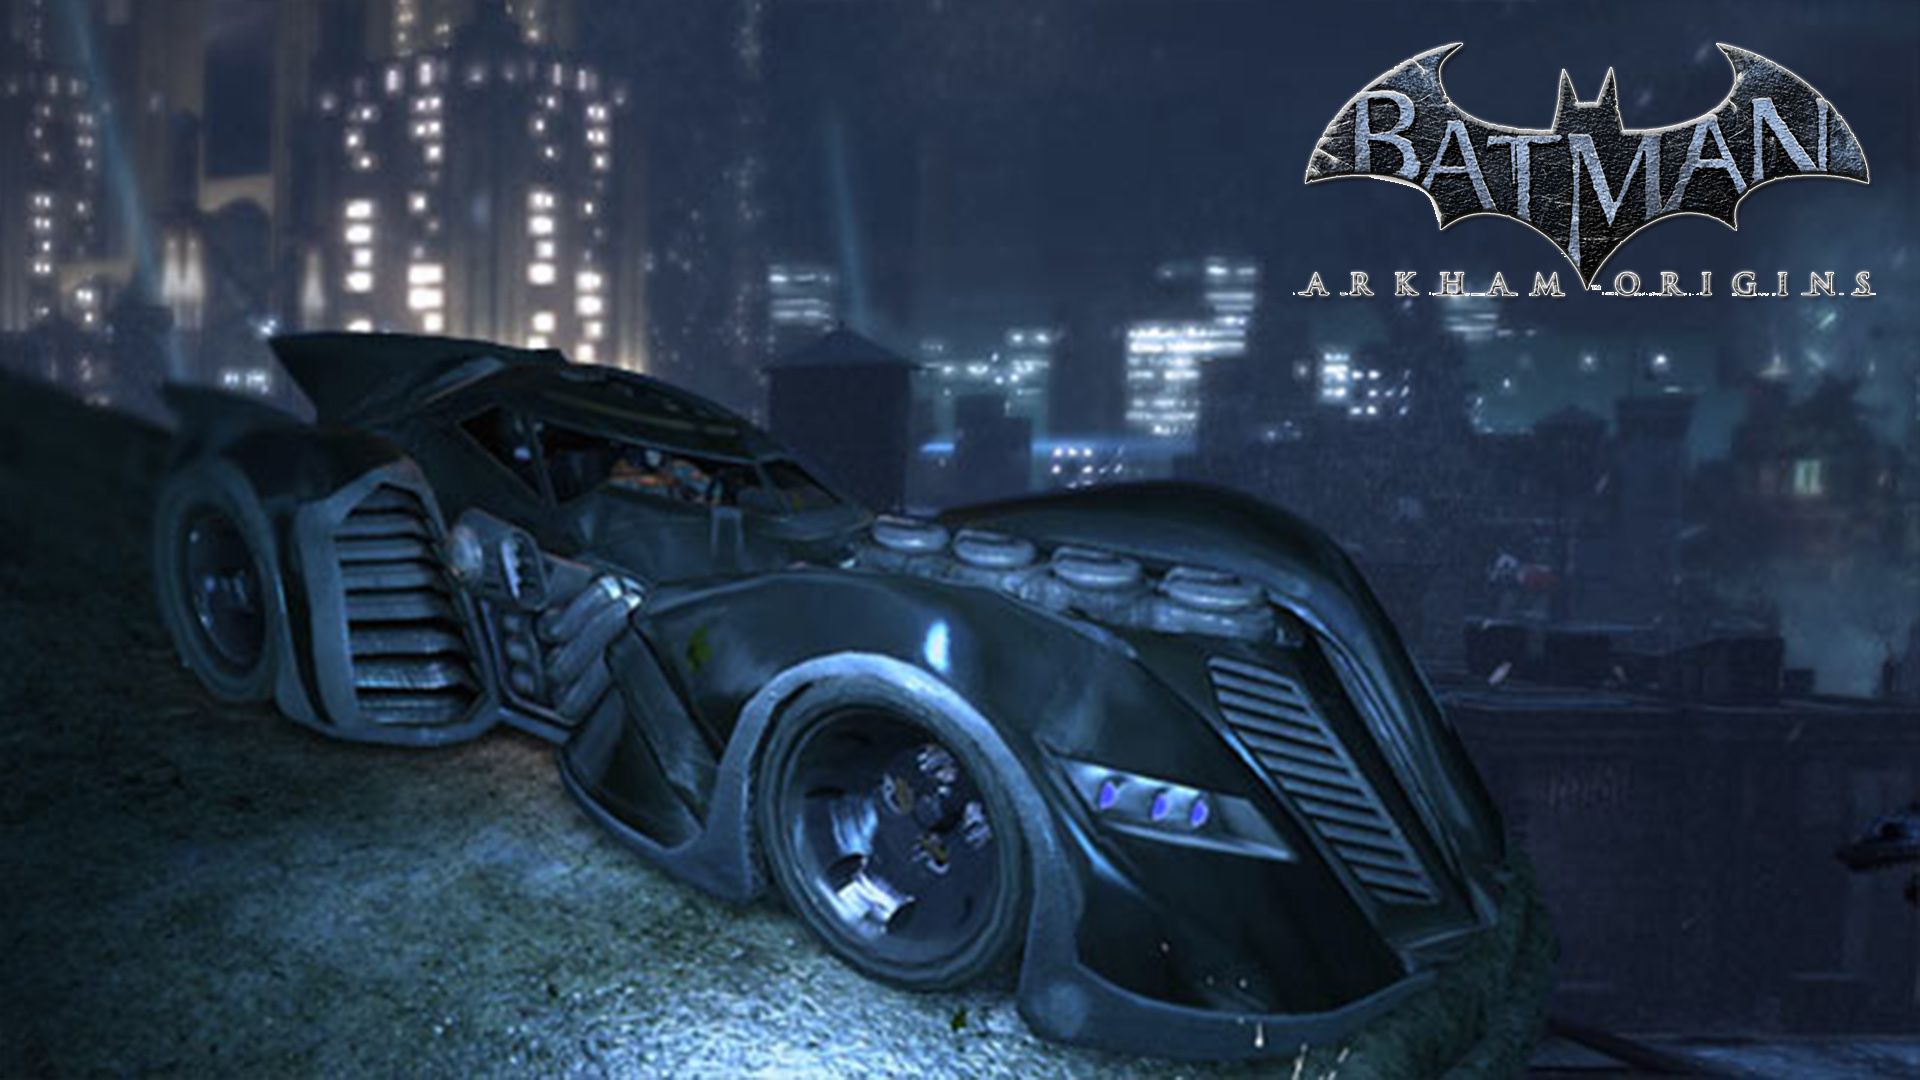 Batman Arkham Origins Wallpaper - Batman Arkham Origins Car - HD Wallpaper 